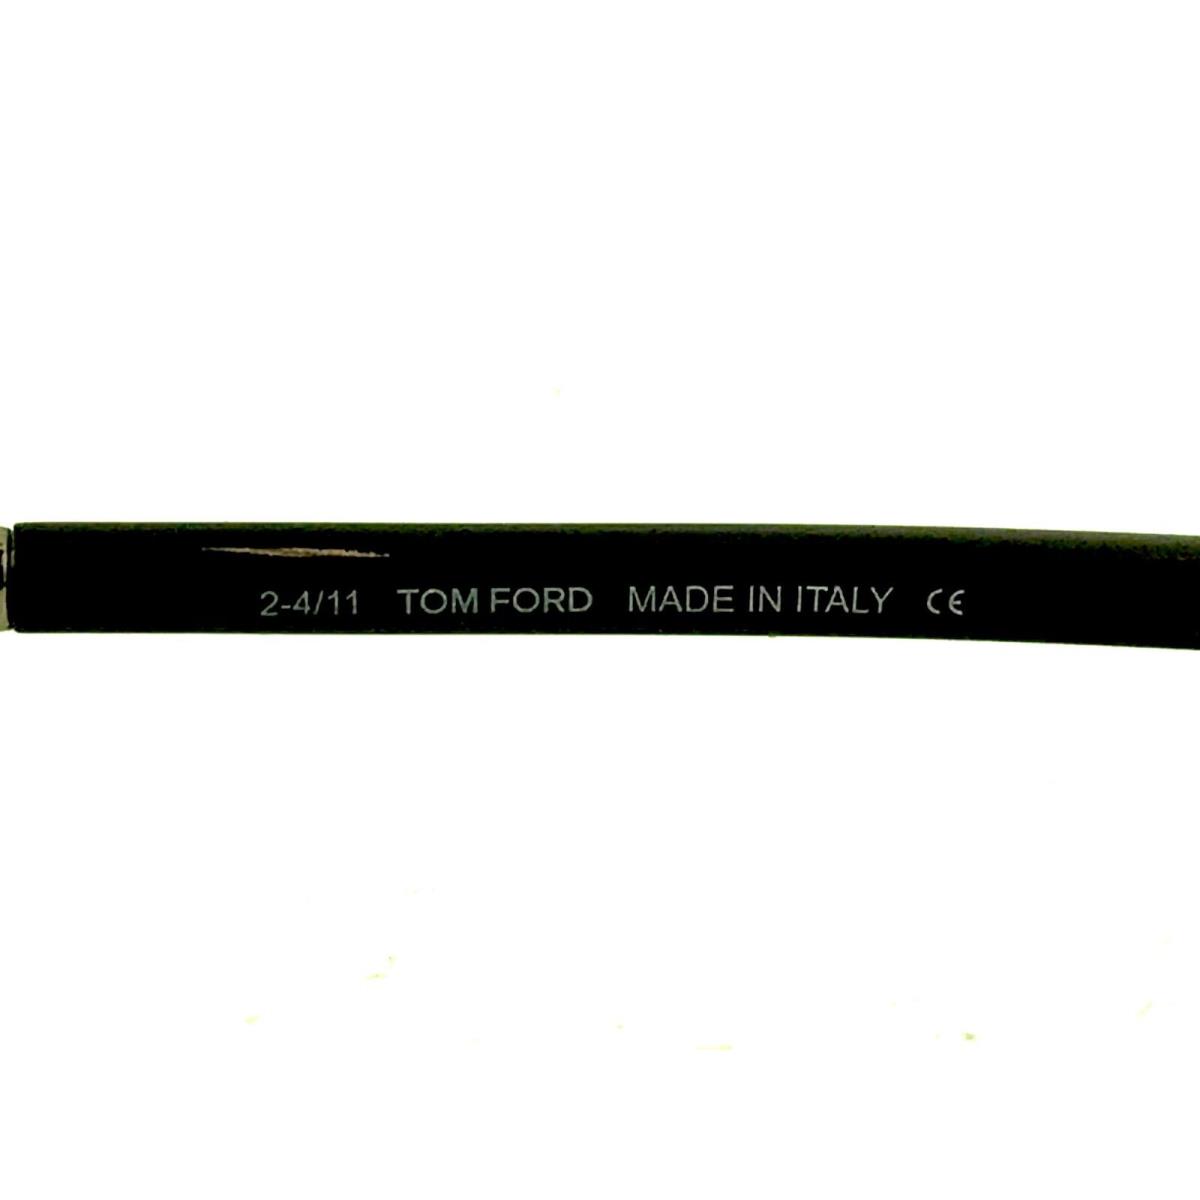 Tom Ford sunglasses  - Multicolor Frame, Green Lens 3